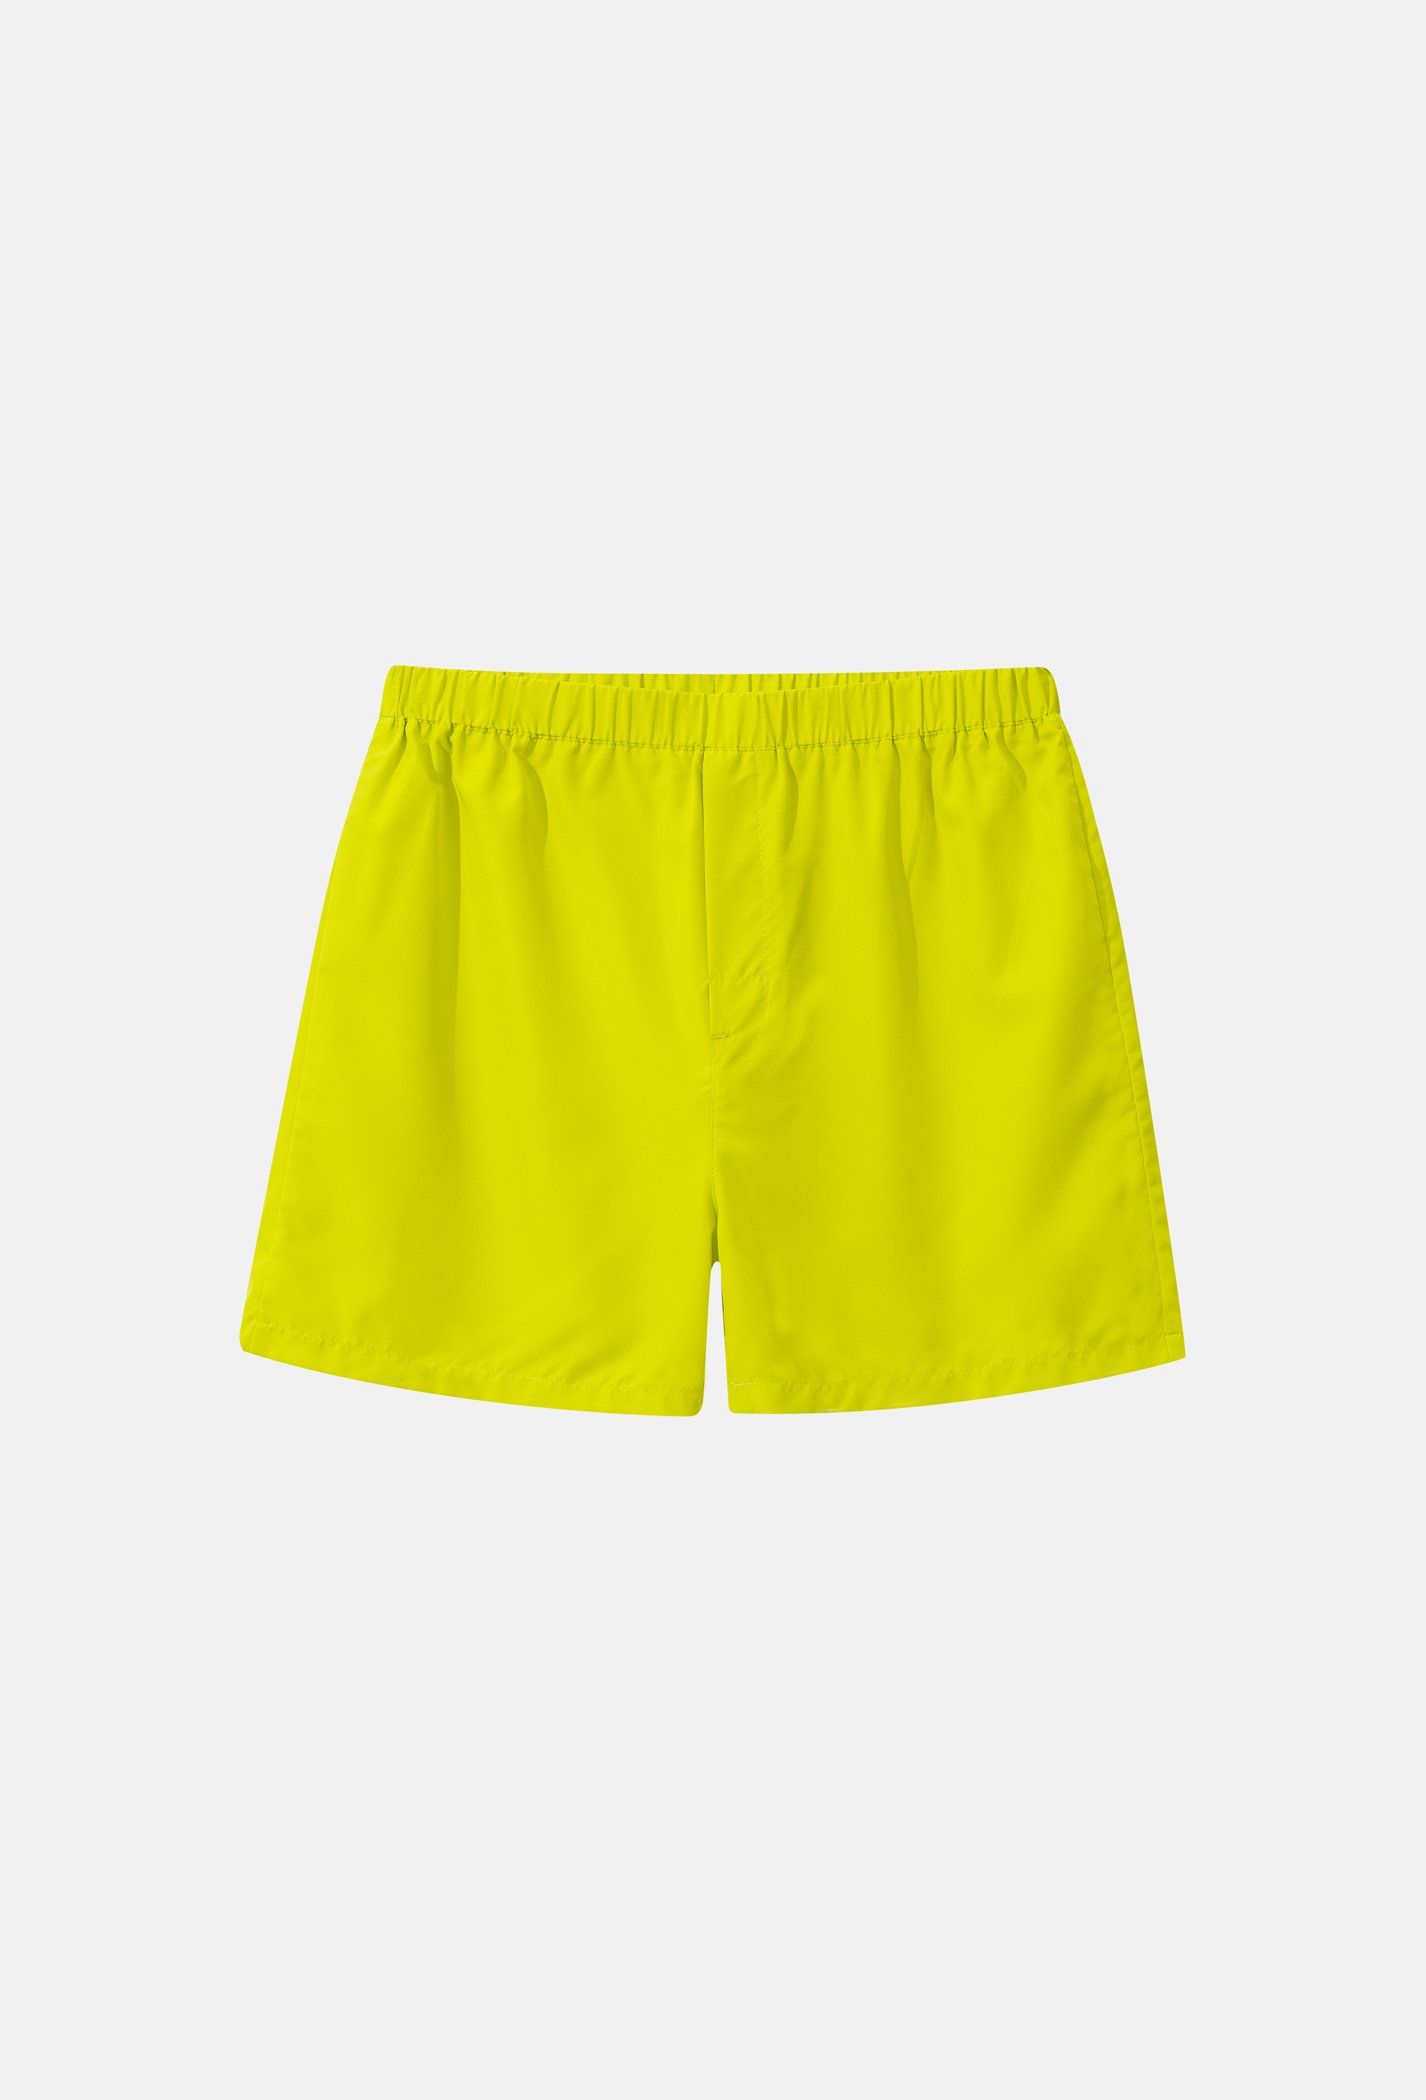 SĂN DEAL - Quần Shorts mặc nhà Coolmate Basics - Vàng chanh Vàng chanh